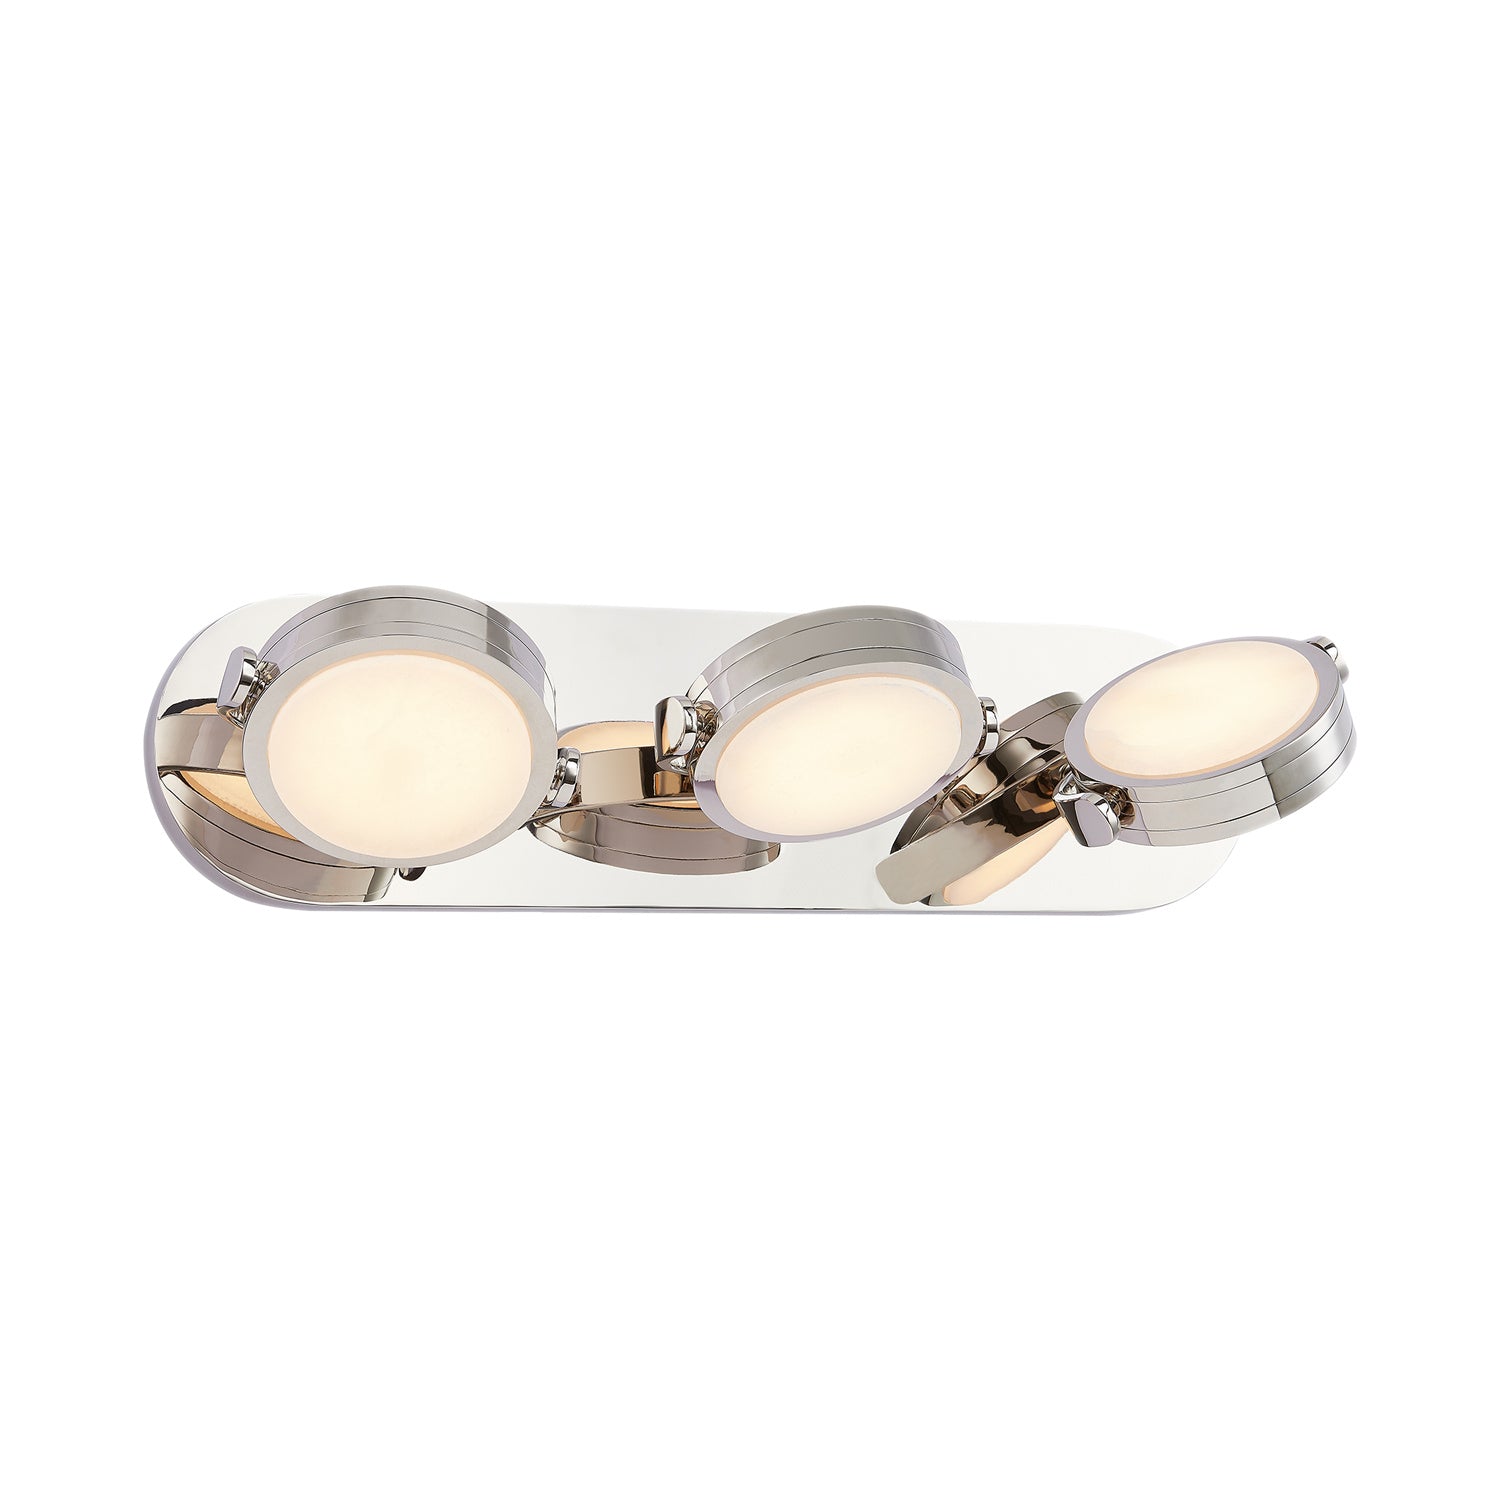 Alora Lighting - WV325326PNAR - LED Vanity - Blanco - Polished Nickel/Alabaster|Urban Bronze/Alabaster|Vintage Brass/Alabaster